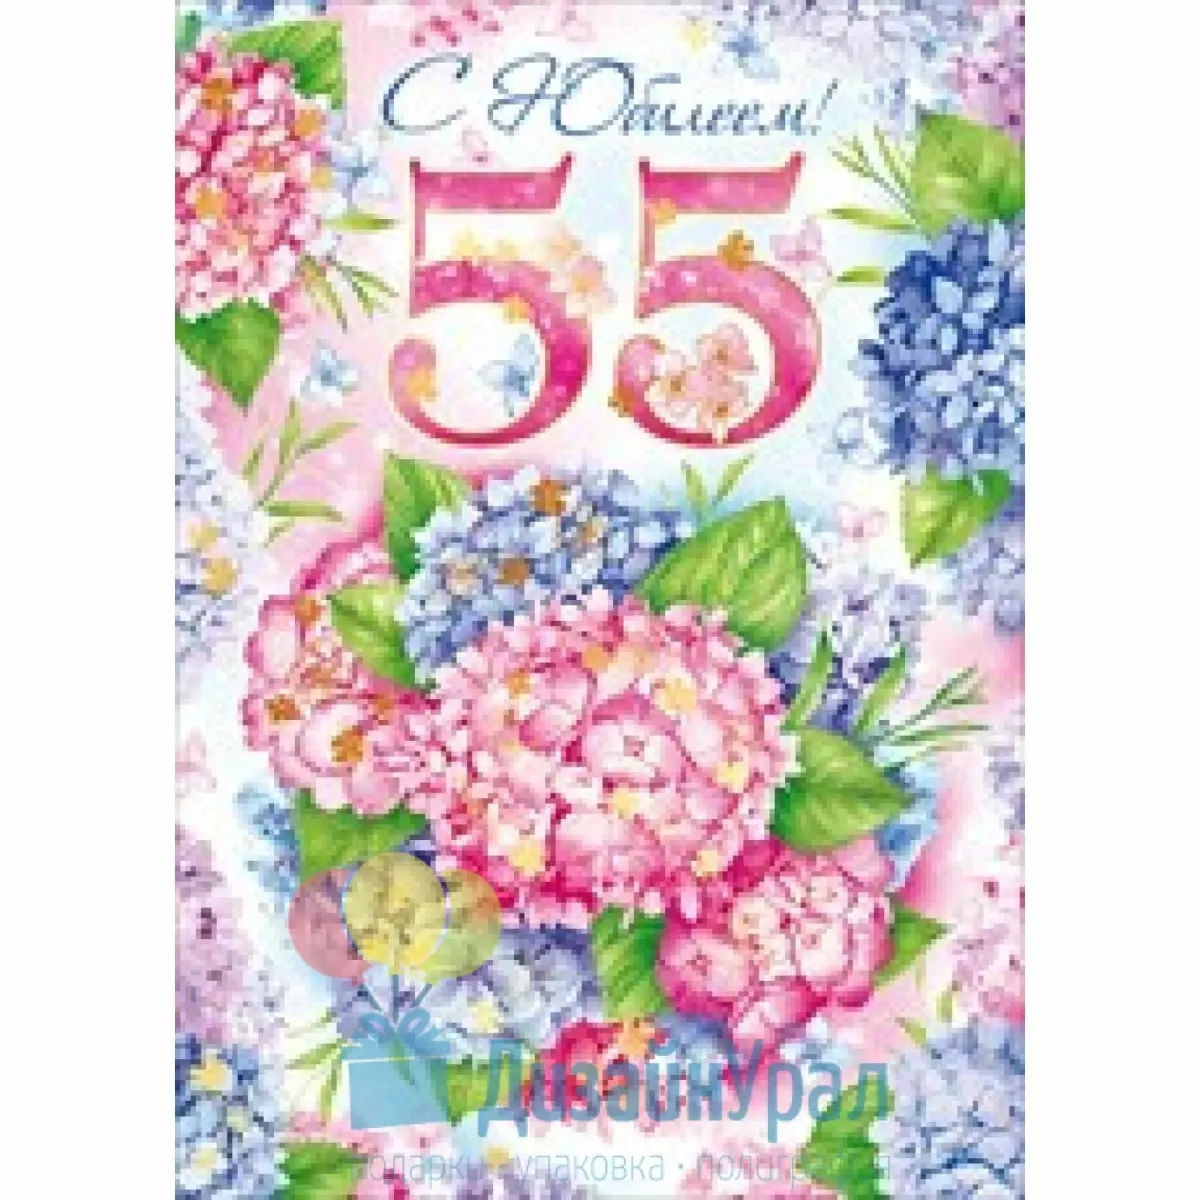 Поздравление с днем 55 летия женщине открытка